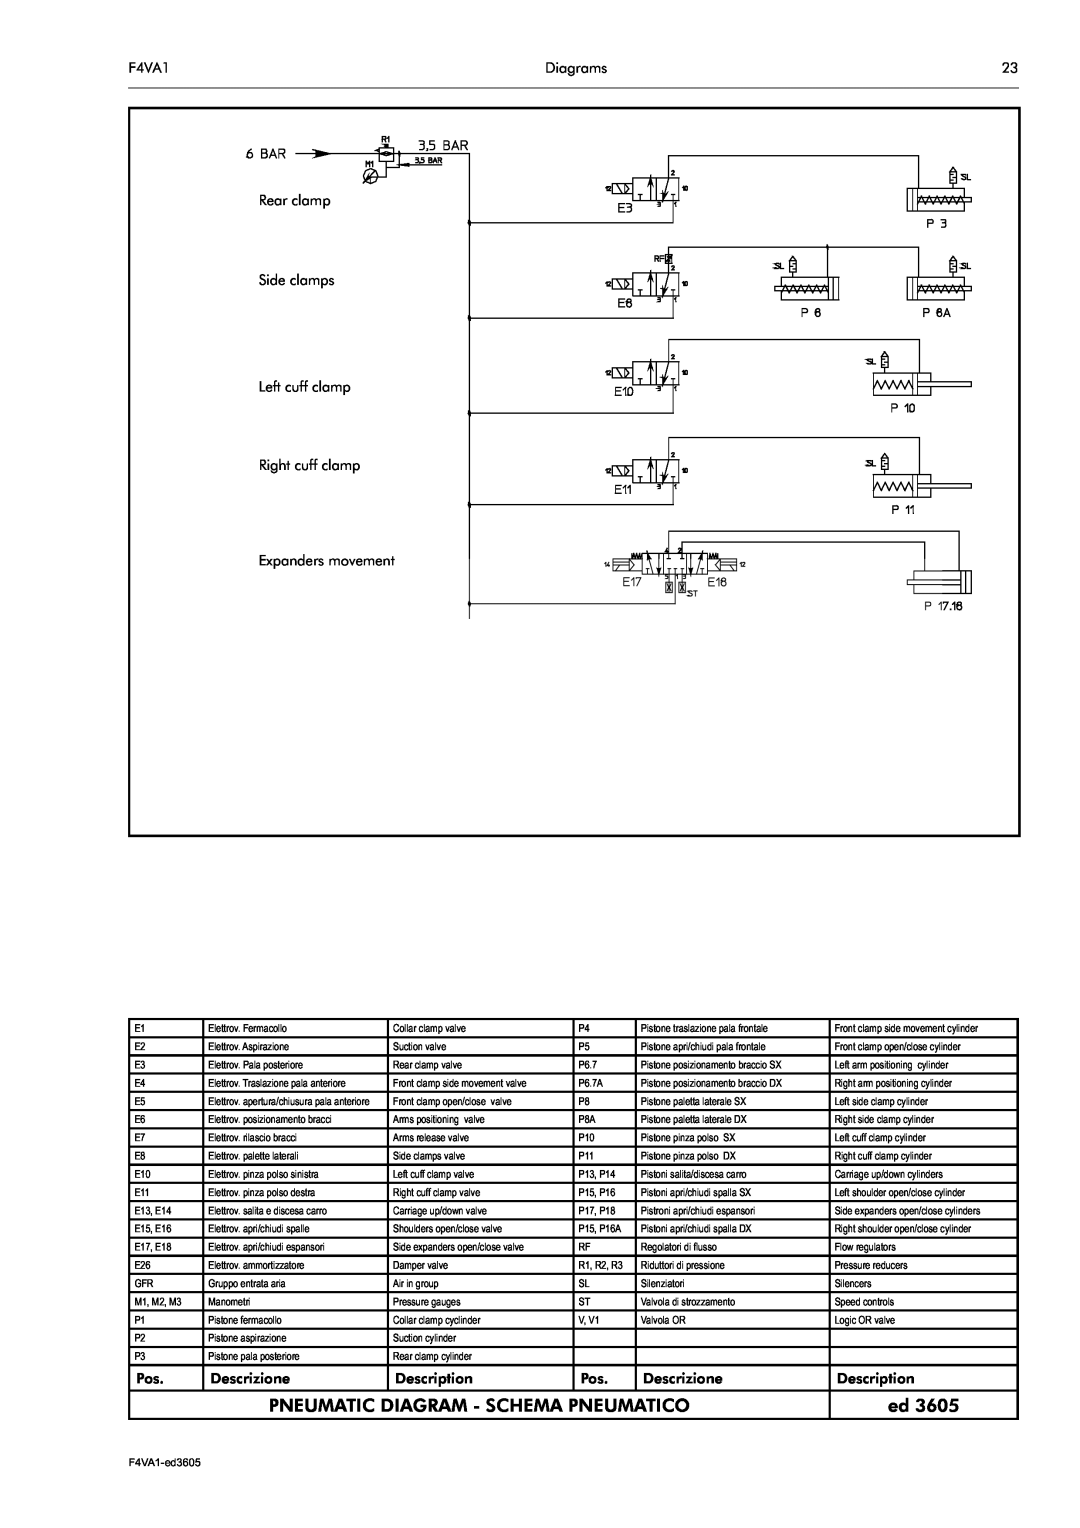 Electrolux F4VA1 manual Pneumatic Diagram - Schema Pneumatico 